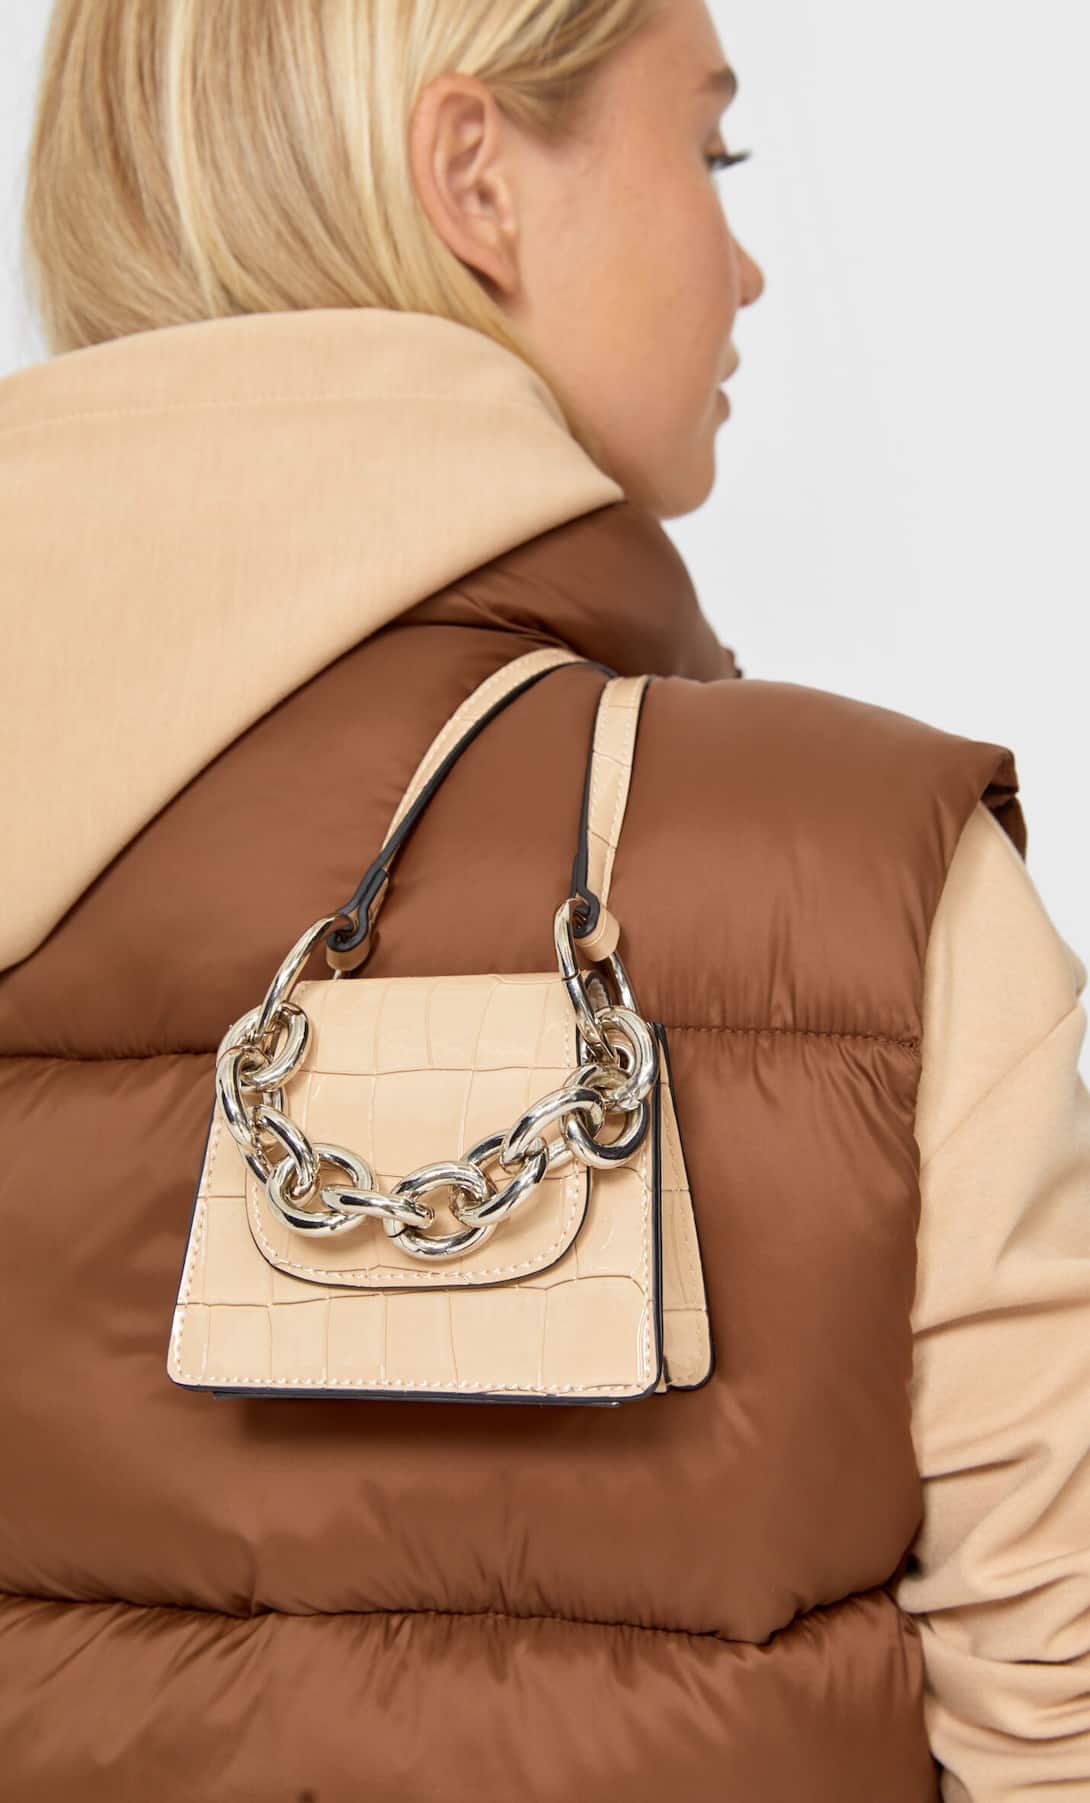 Los mini bolsos amenazan con convertirse en el bolso viral del otoño, Stradivarius ha creado una conexión inspirándose en Chanel